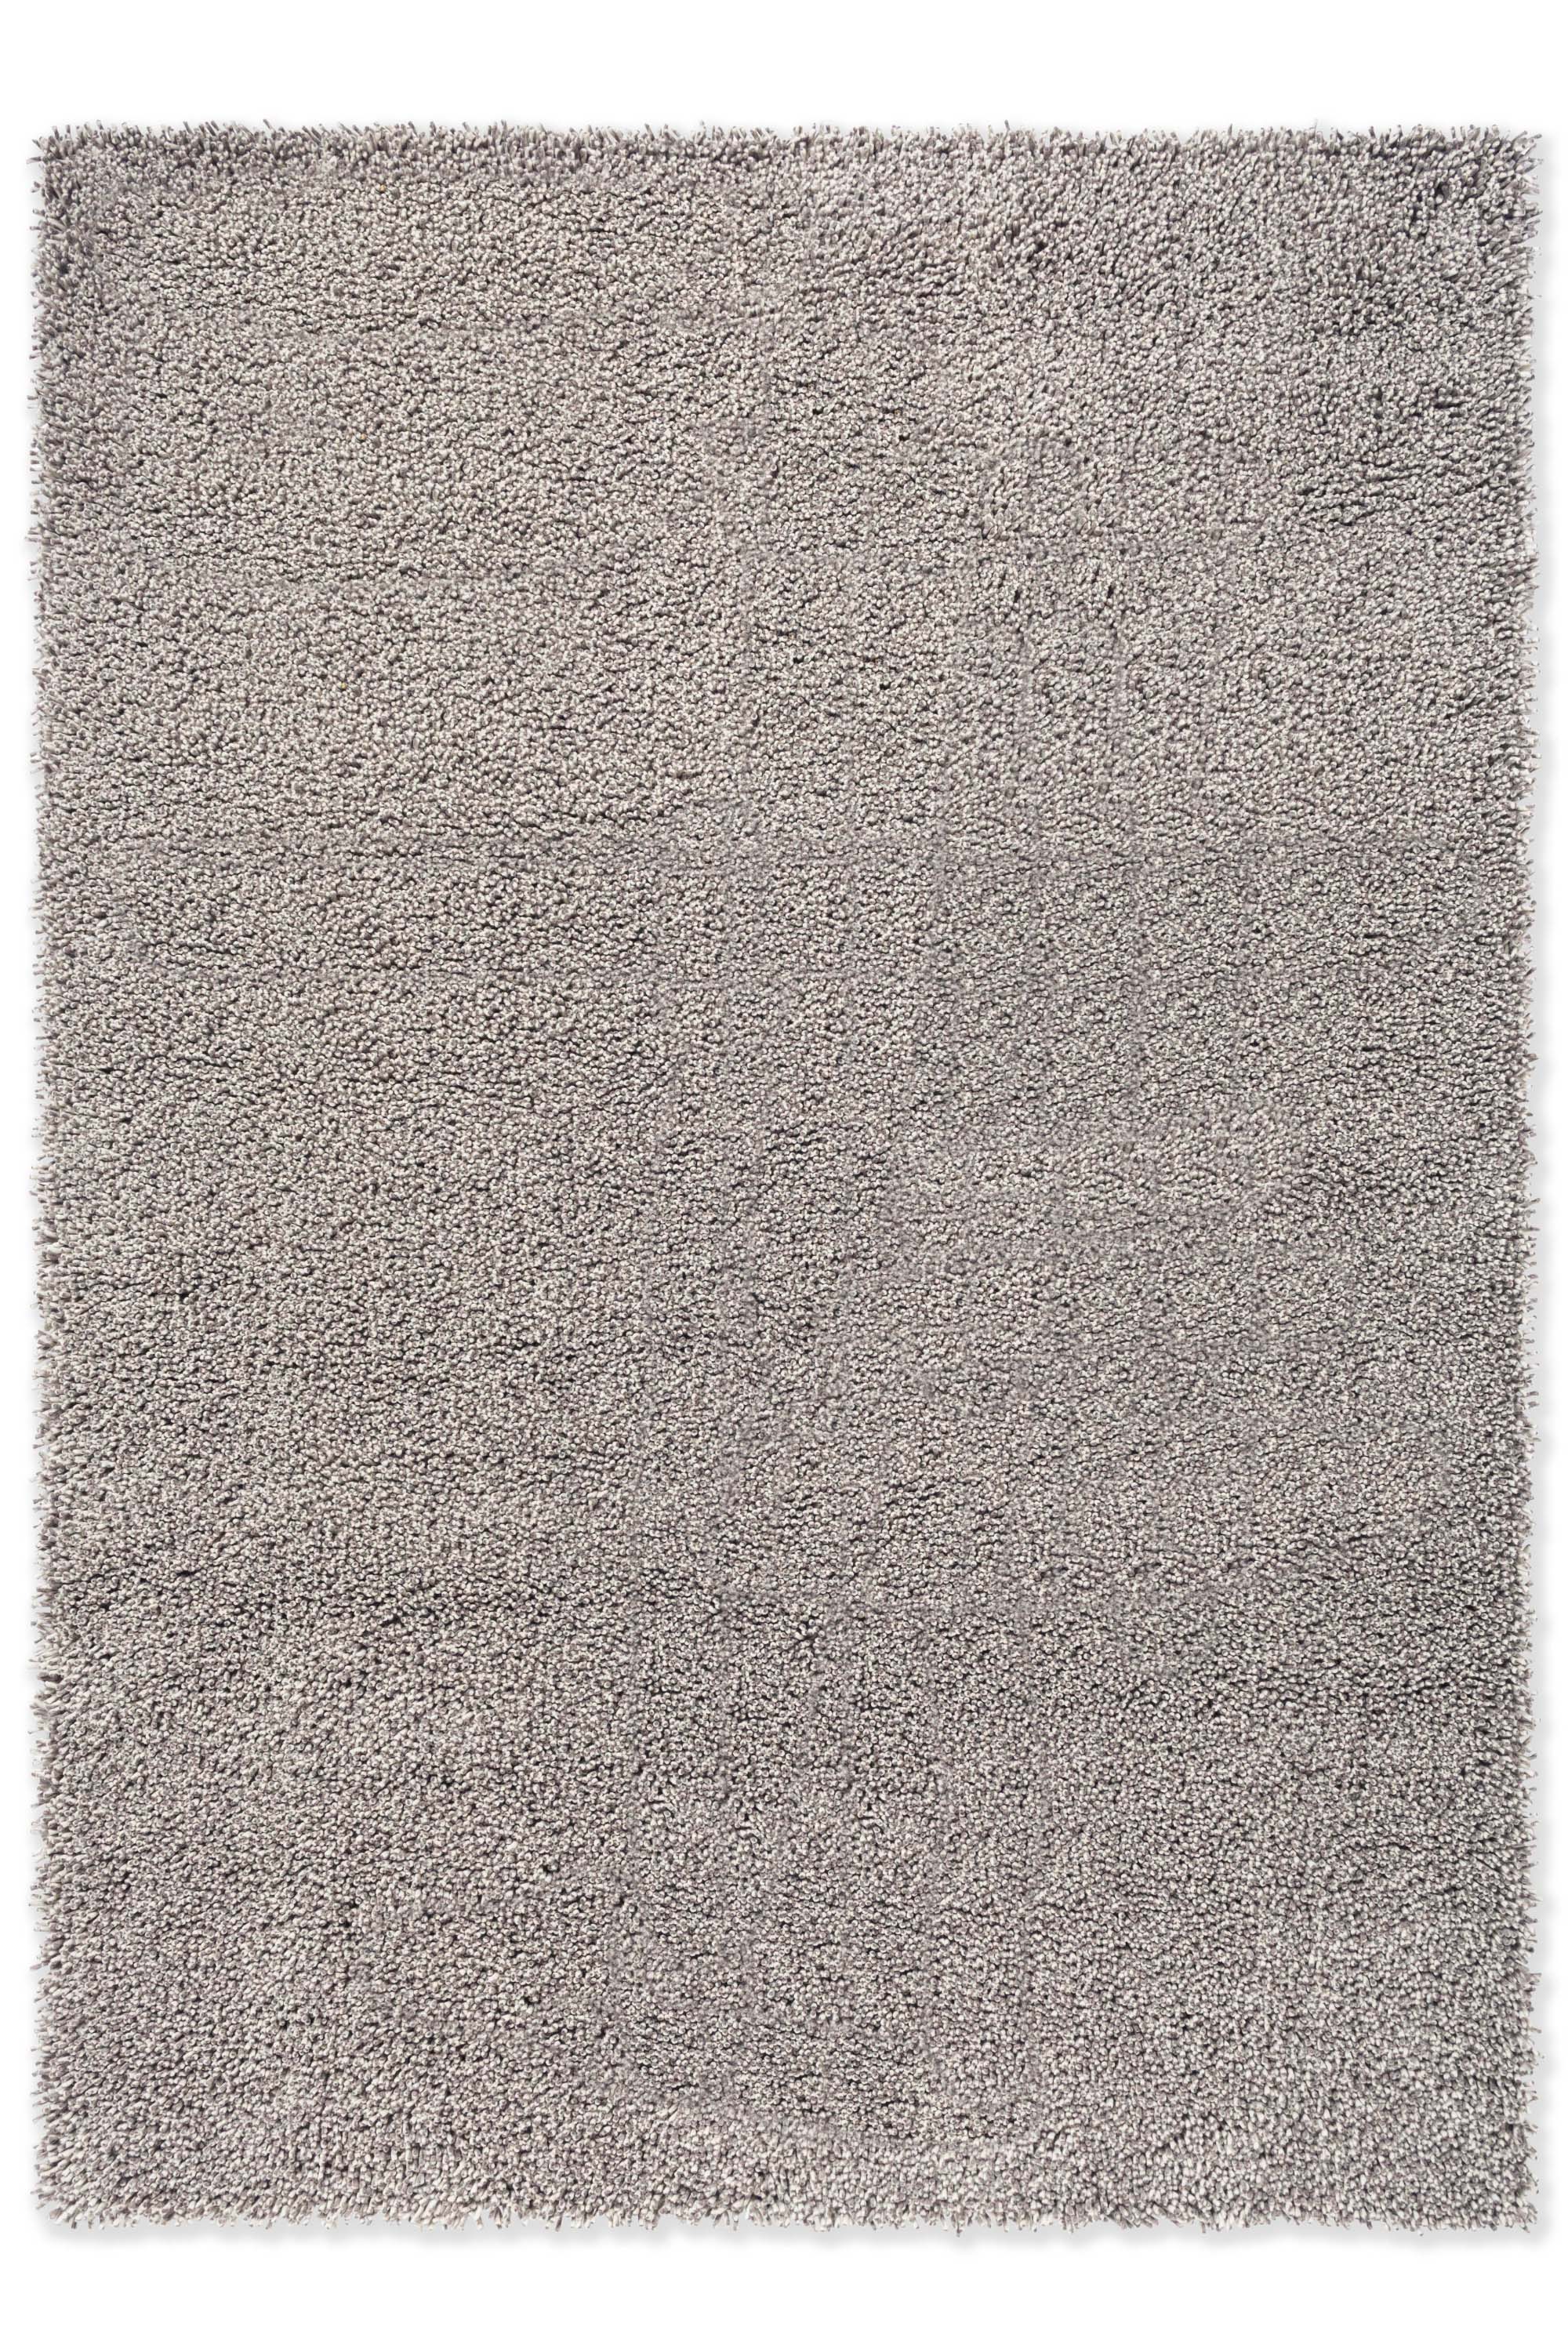 Plain dark grey rug with shaggy pile